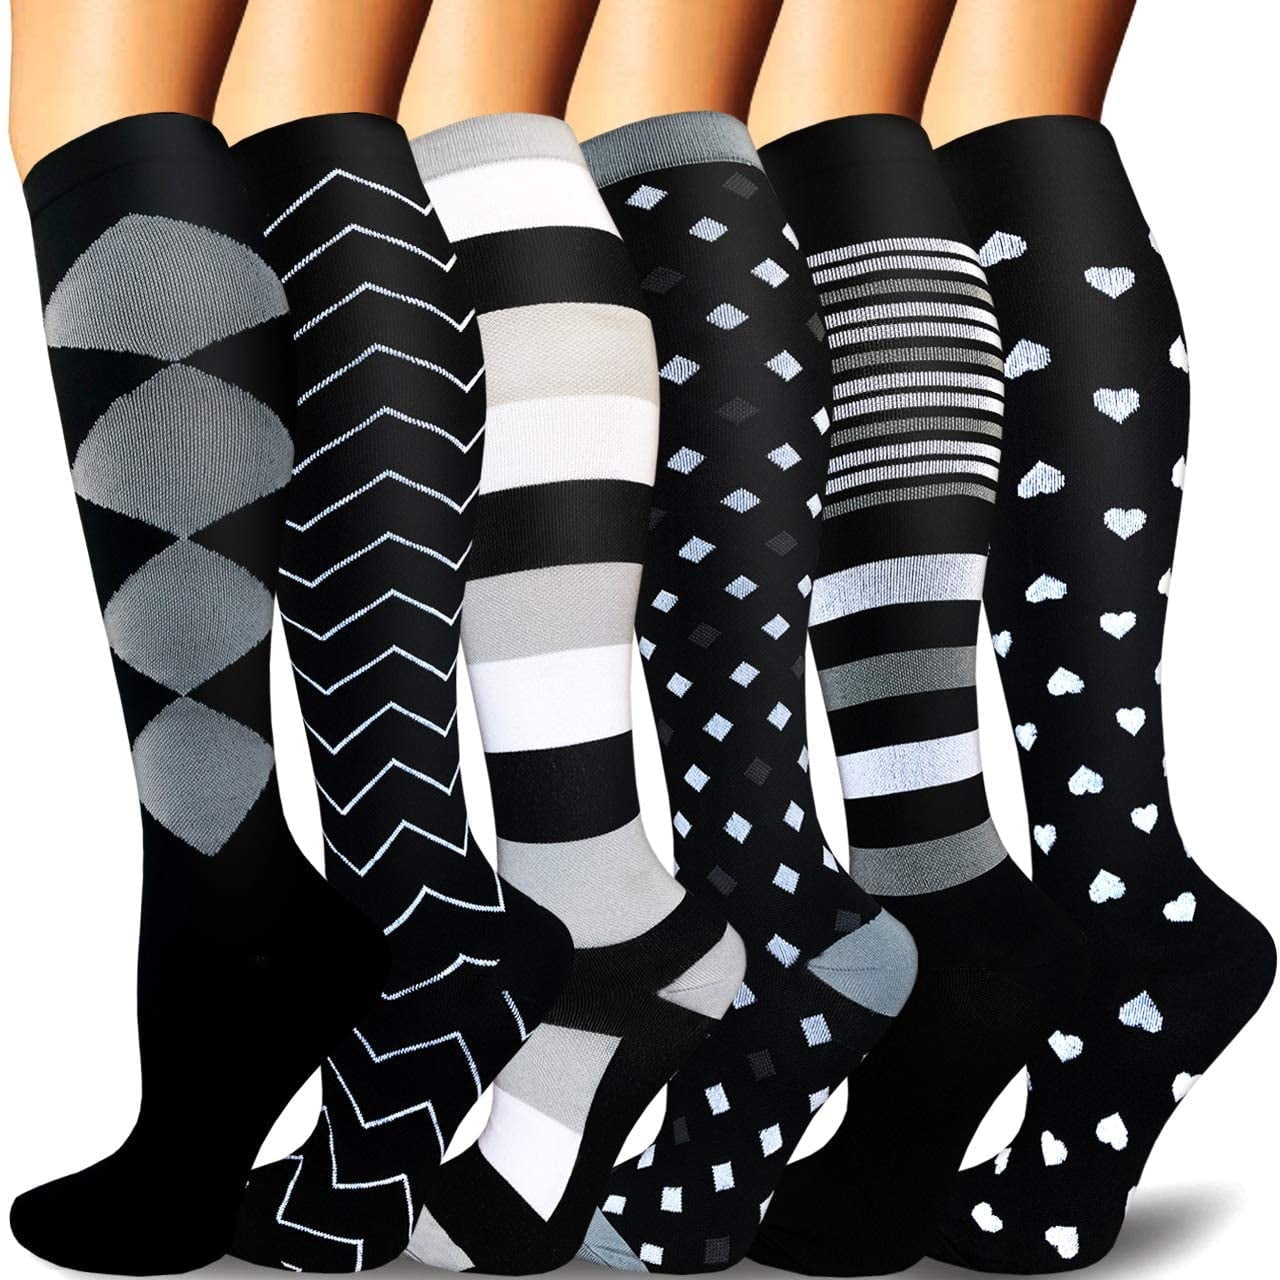  Aoliks Compression Socks for Women & Men,Funny